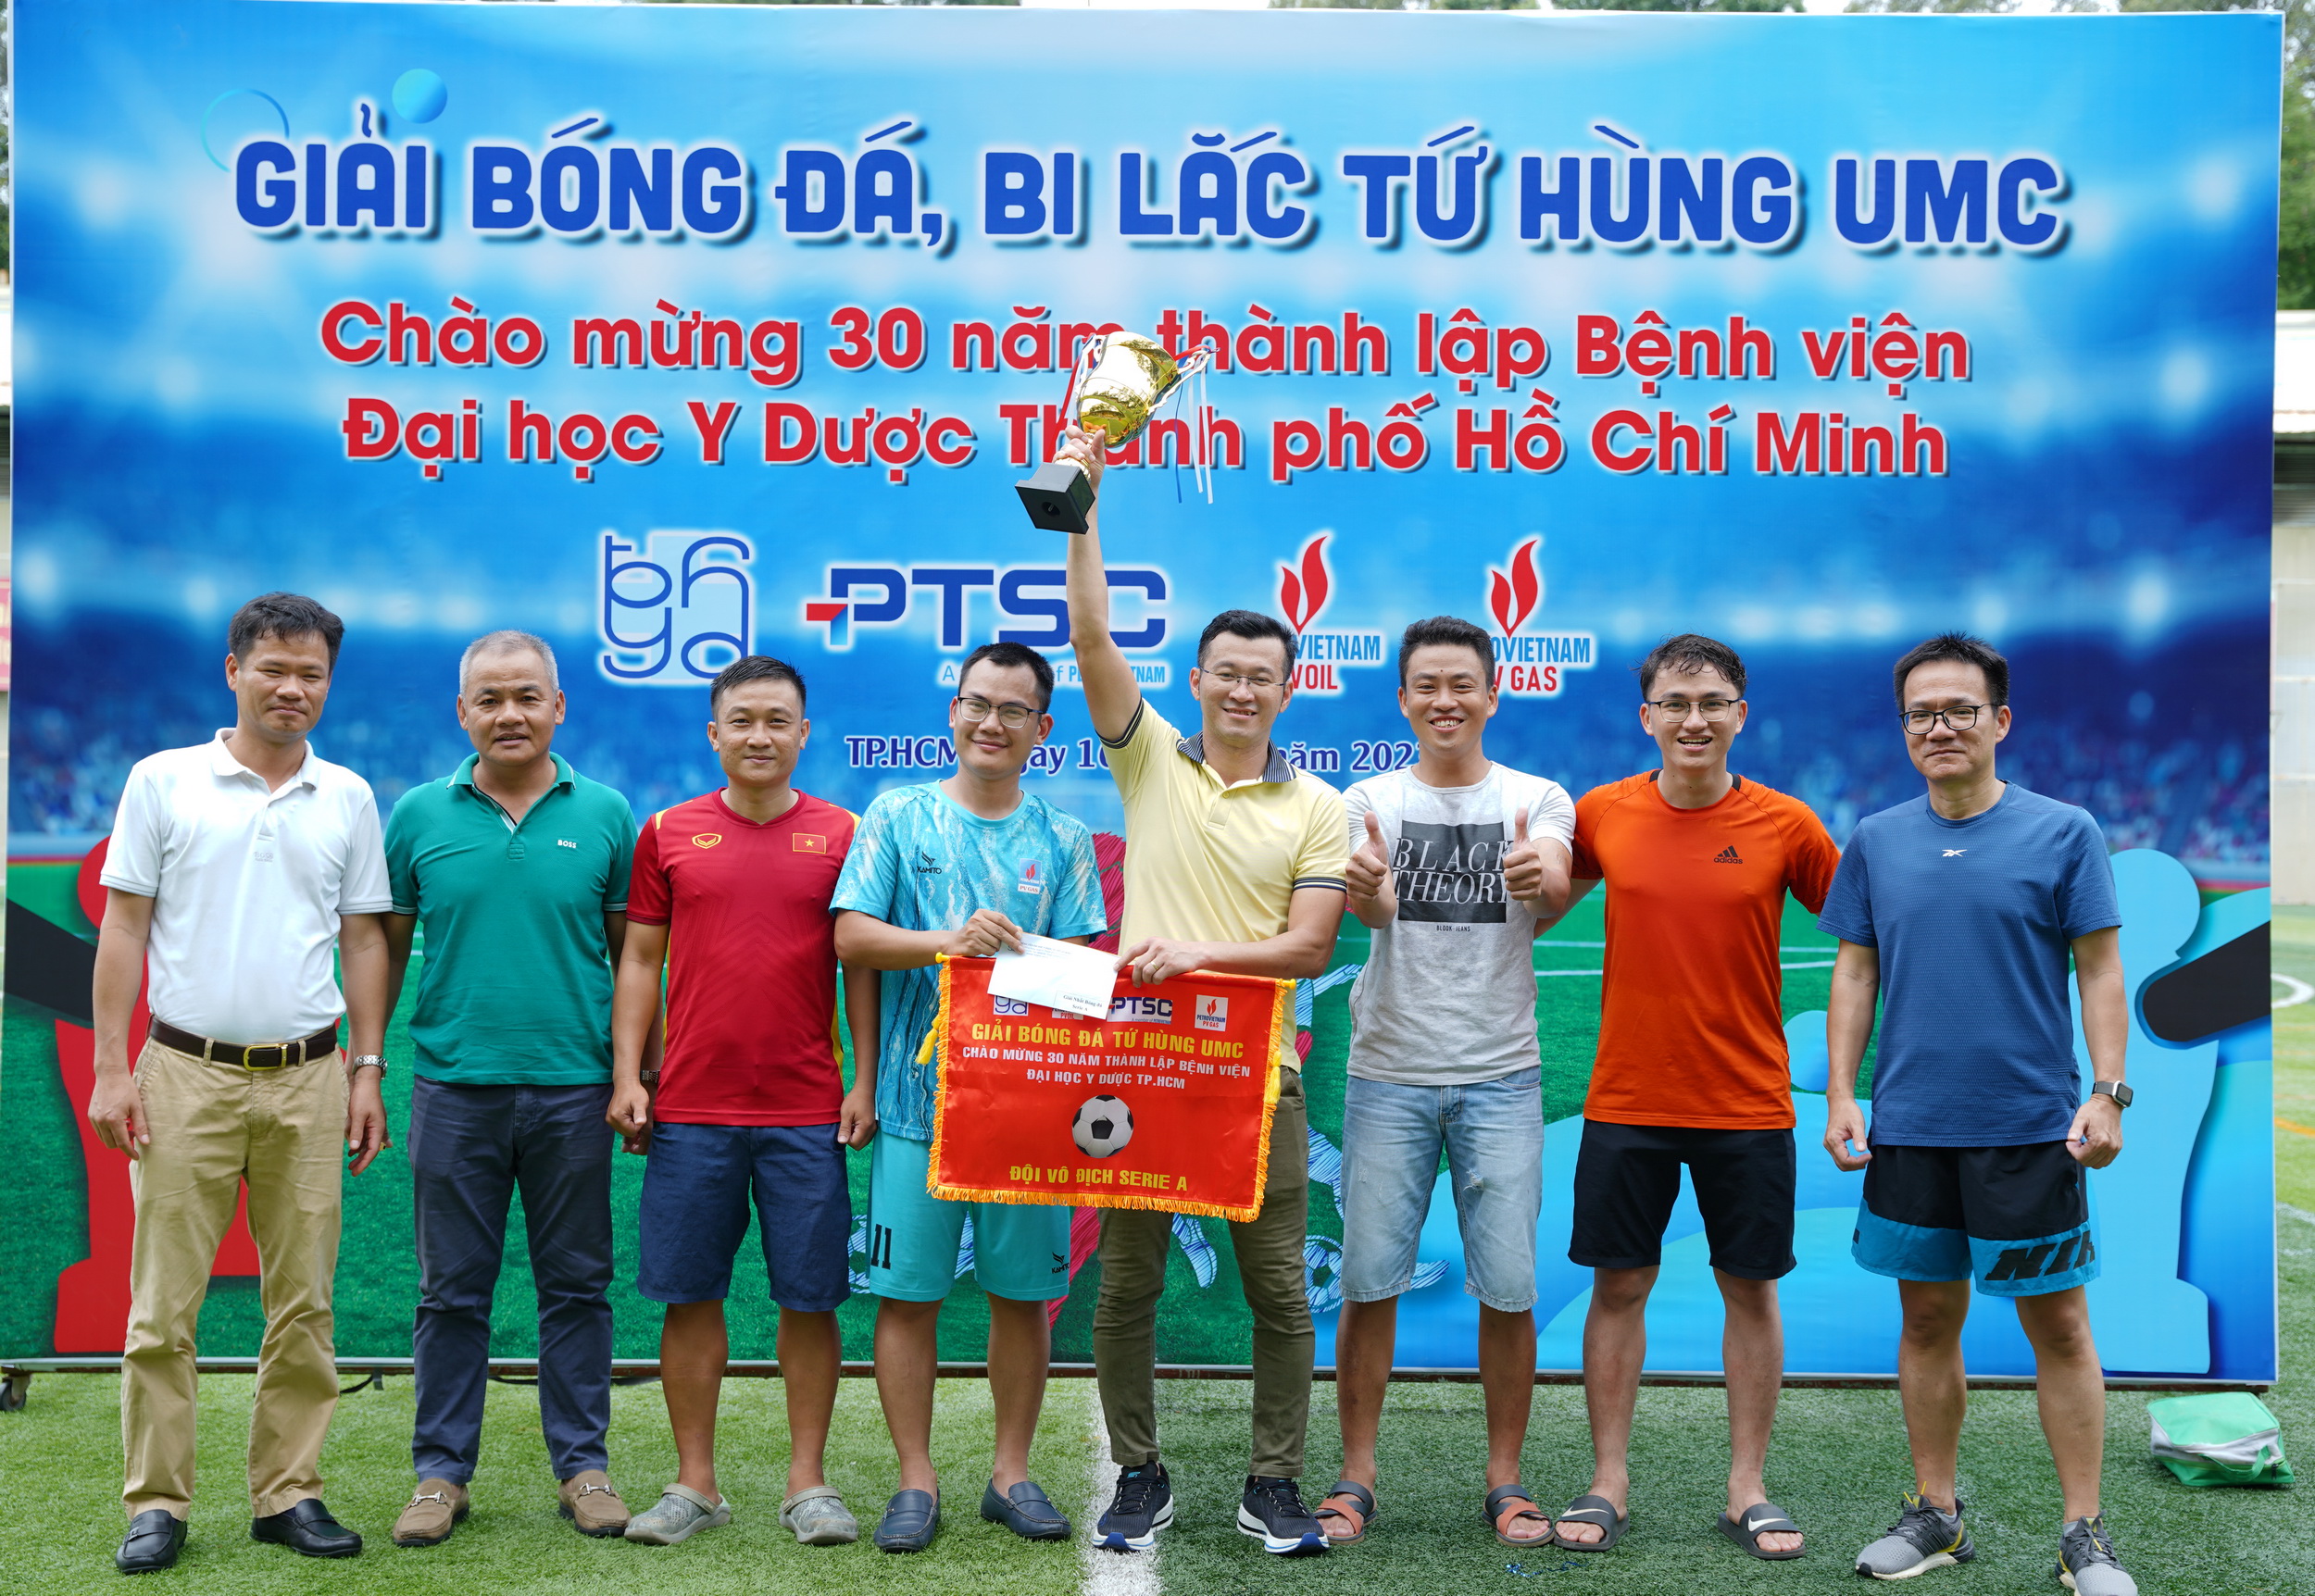 PV GAS giành chức vô địch Giải bóng đá kỷ niệm 30 năm thành lập BV Đại học Y Dược TP. HCM